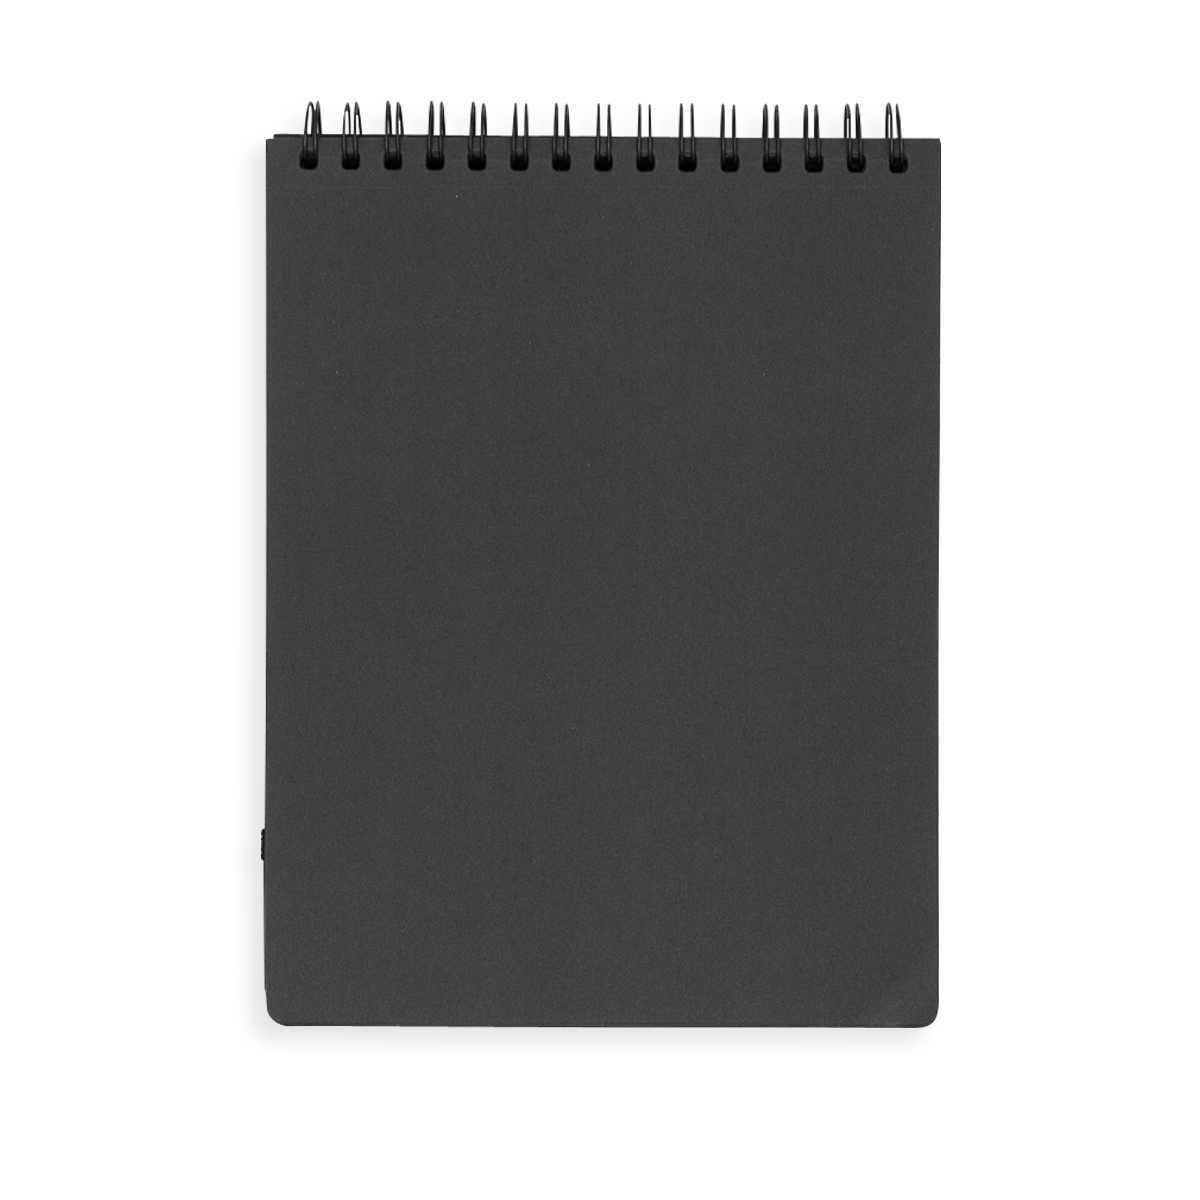 https://www.ooly.com/cdn/shop/products/118-SK-BLK-Black-DIY-Cover-Sketchbook-Large-O1.png?v=1612204797&width=1200